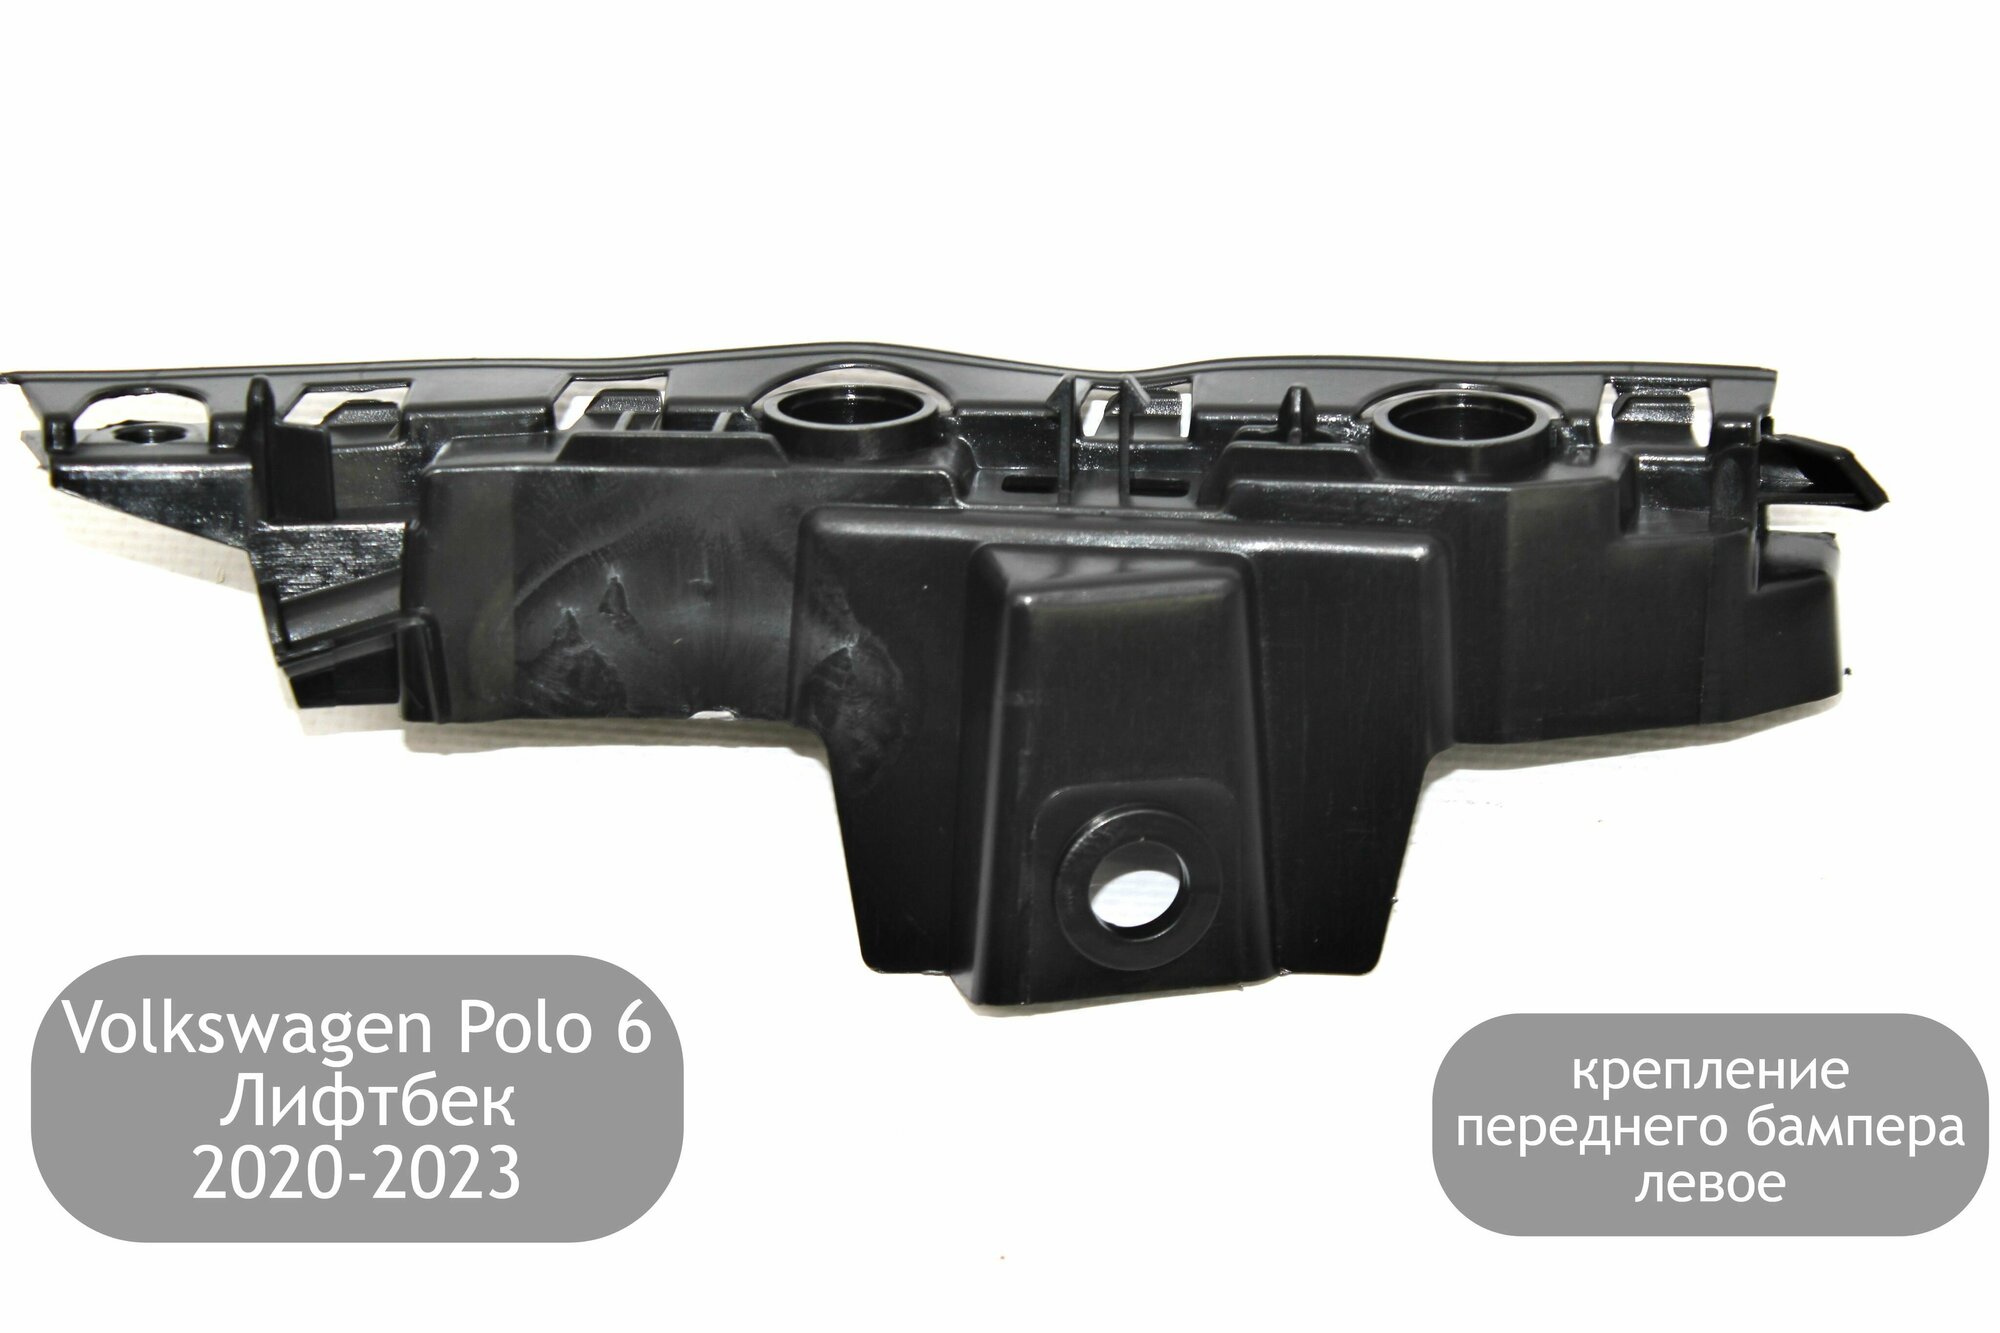 Крепление переднего бампера левое для Volkswagen Polo 6 Лифтбек 2020-2023